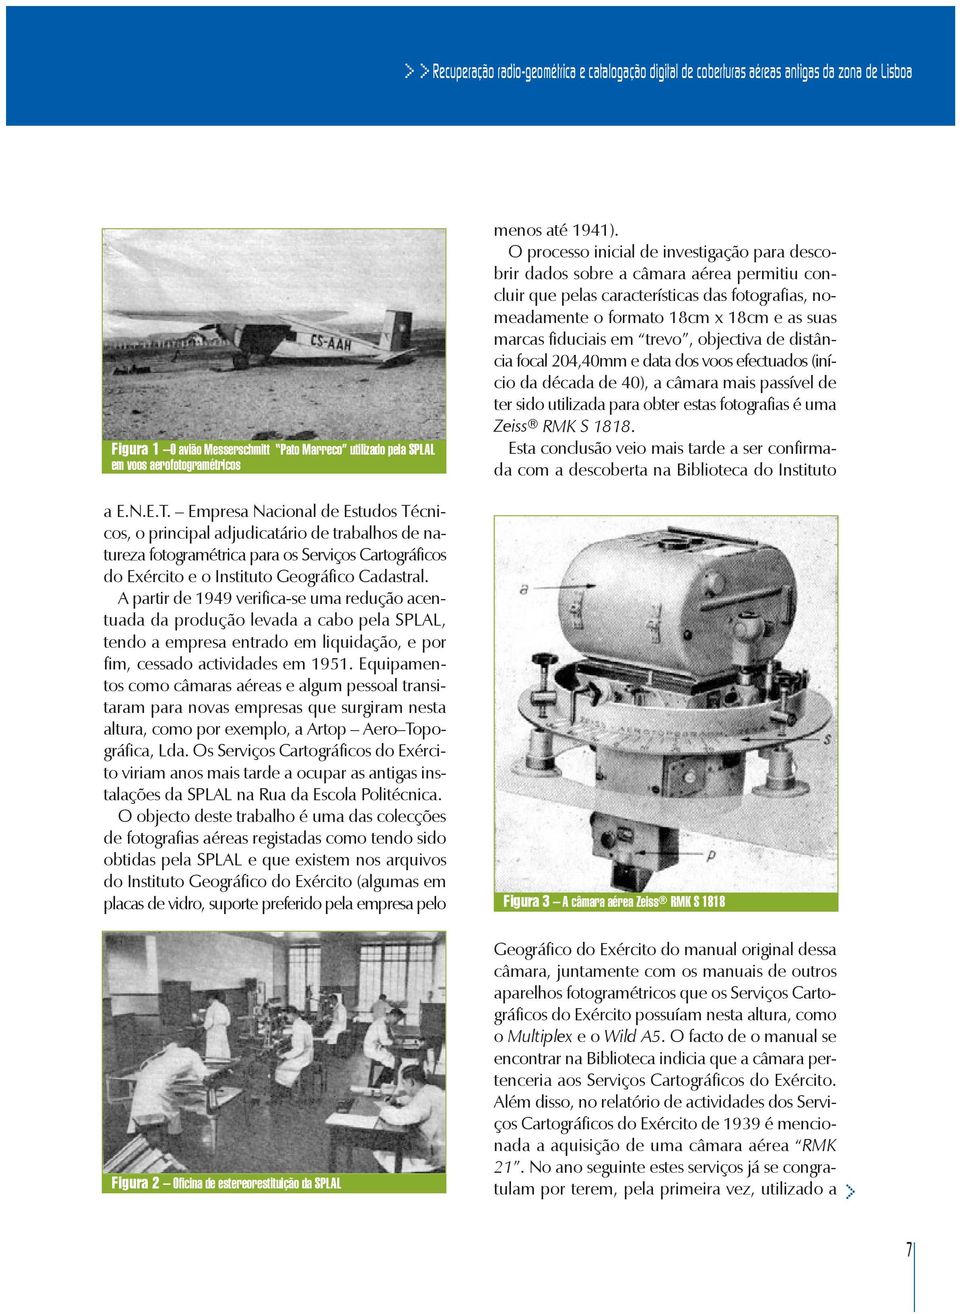 A partir de 1949 verifica-se uma redução acentuada da produção levada a cabo pela SPLAL, tendo a empresa entrado em liquidação, e por fim, cessado actividades em 1951.